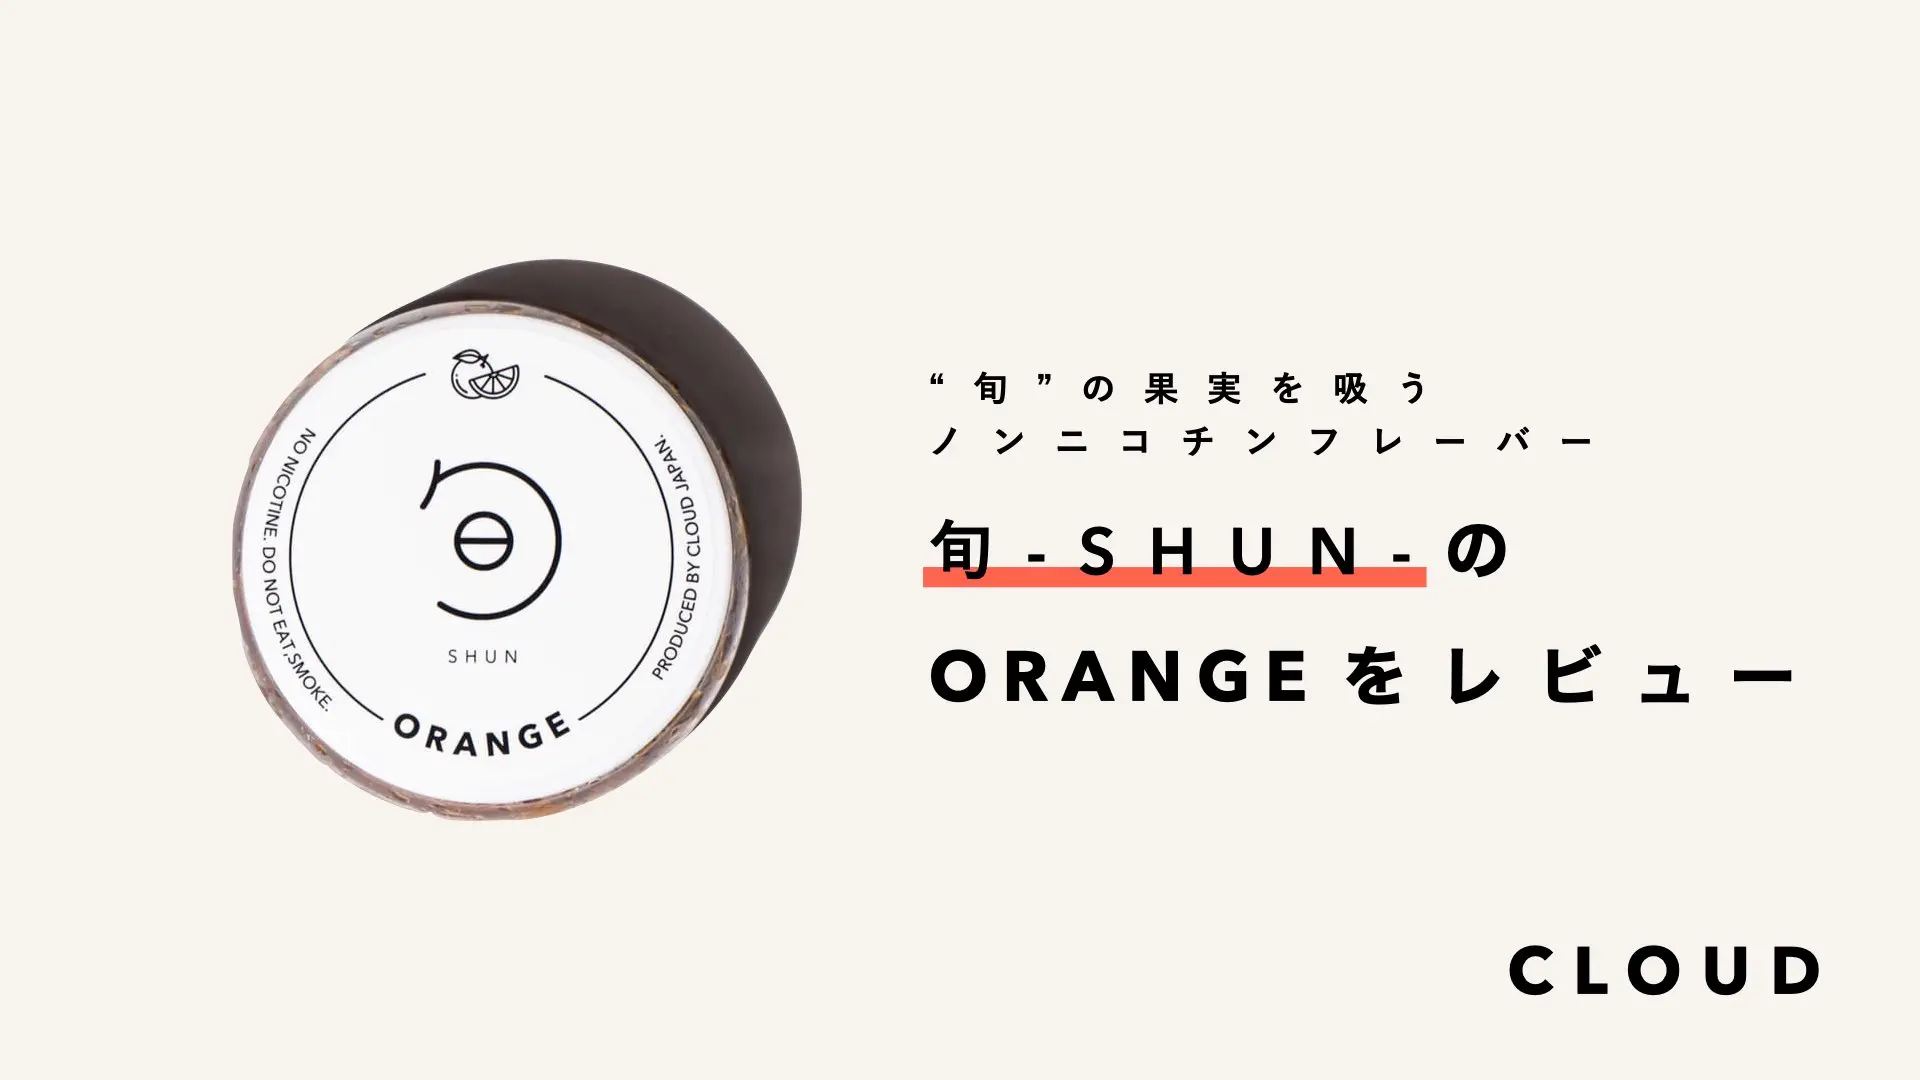 旬-SHUN-ORANGE レビュー